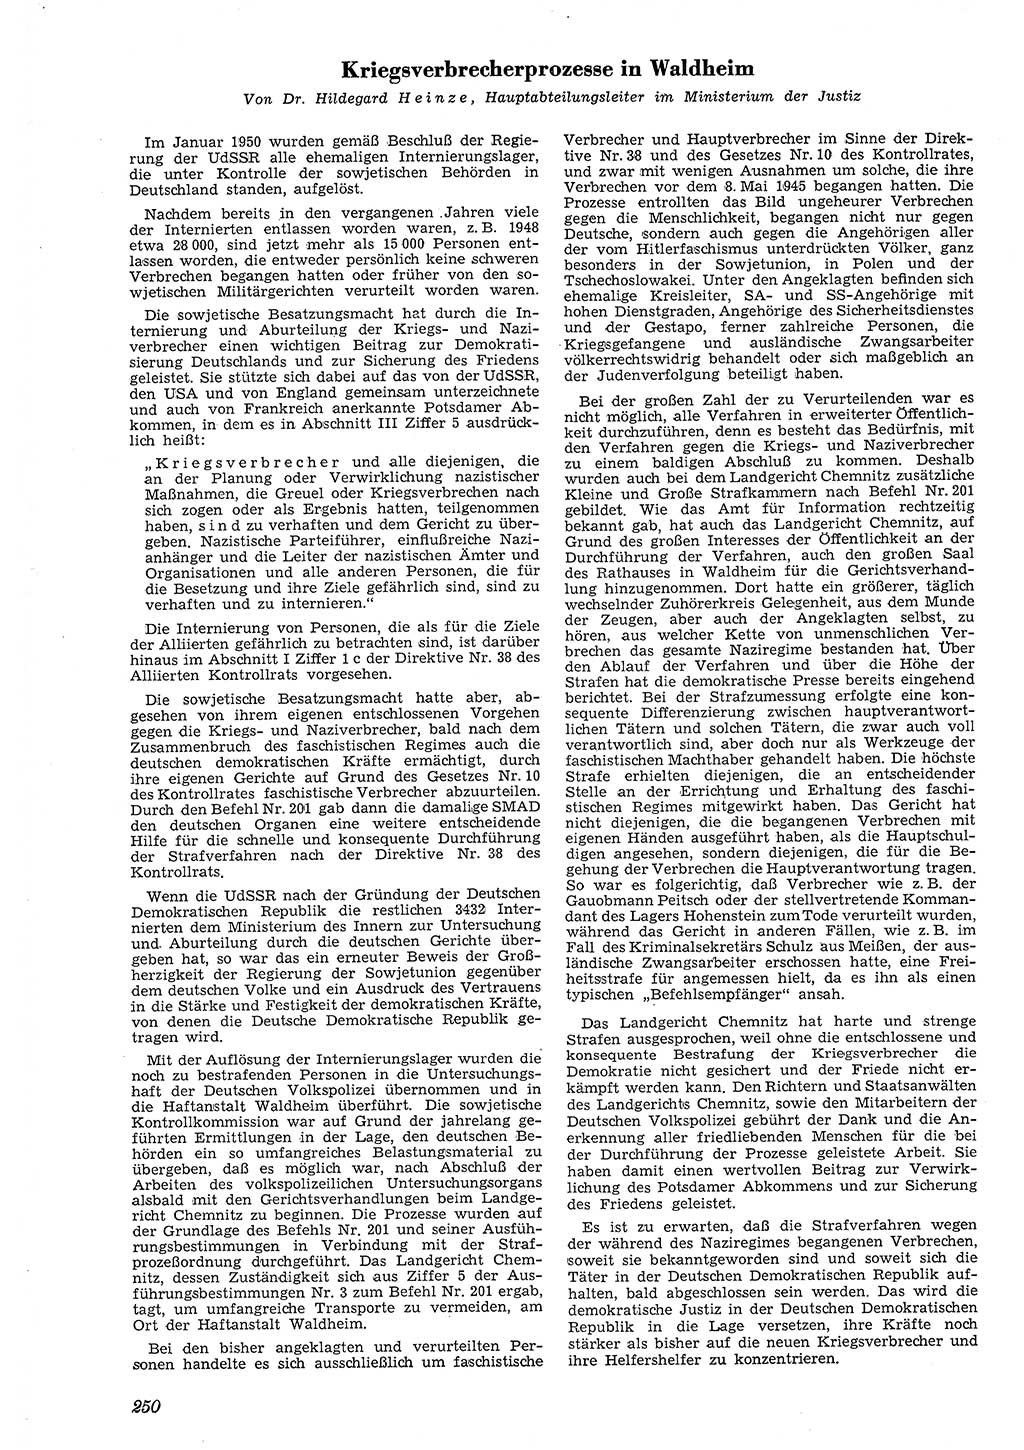 Neue Justiz (NJ), Zeitschrift für Recht und Rechtswissenschaft [Deutsche Demokratische Republik (DDR)], 4. Jahrgang 1950, Seite 250 (NJ DDR 1950, S. 250)